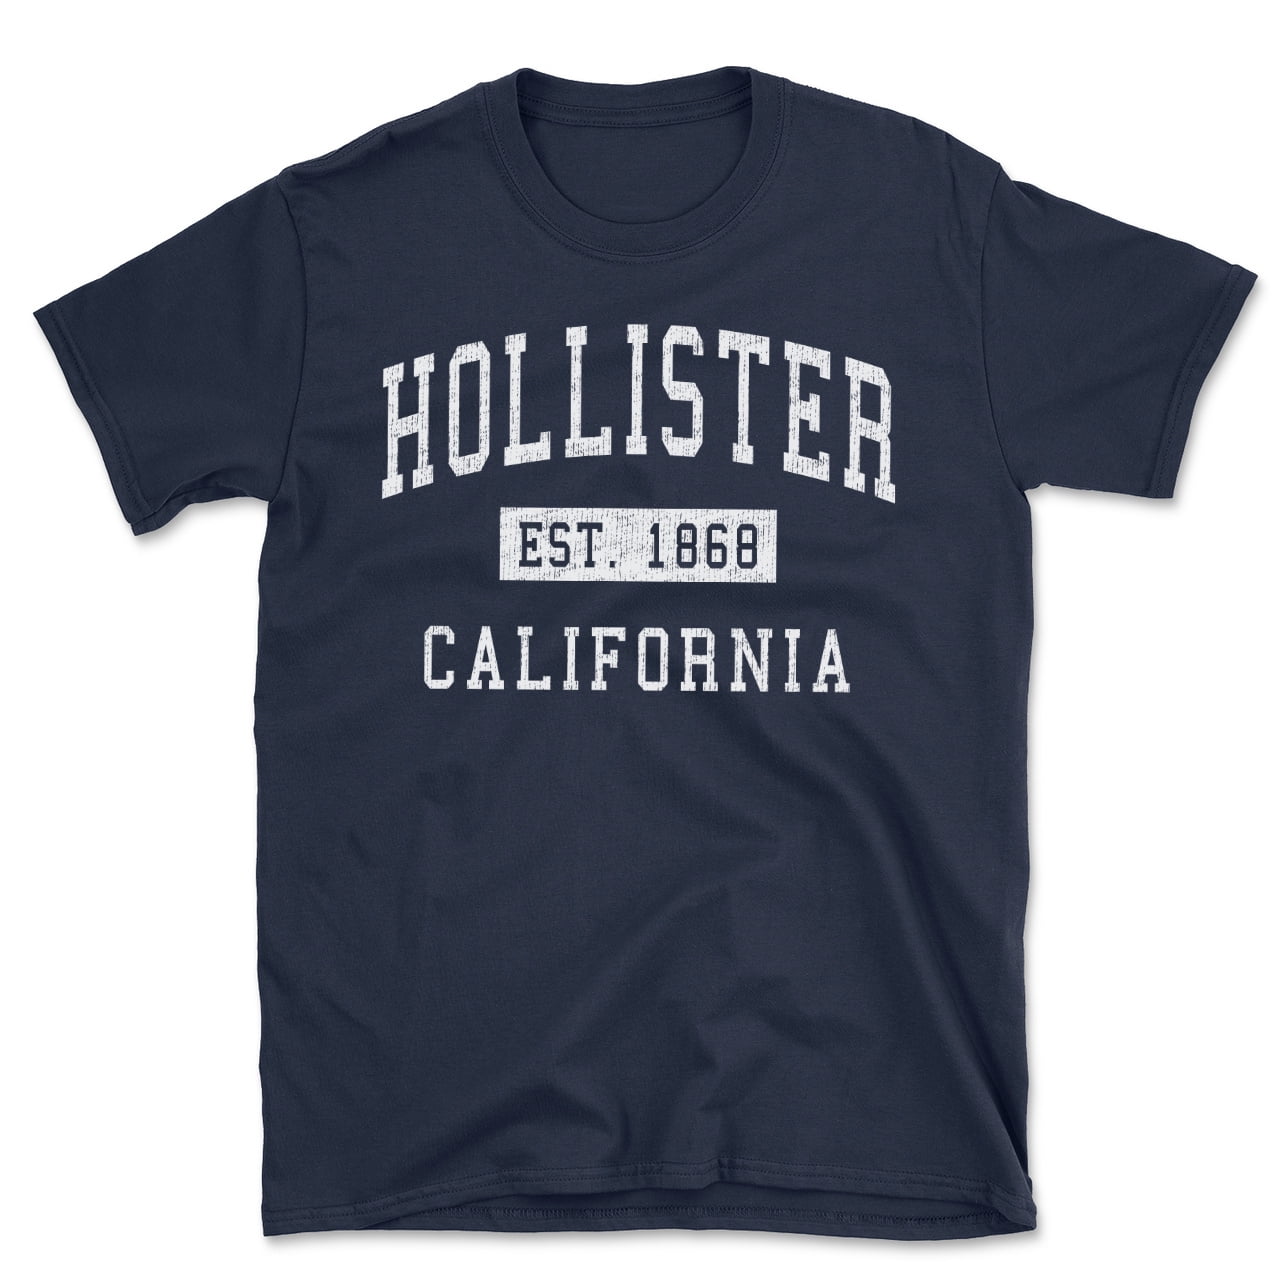 Hollister tech logo t-shirt in black